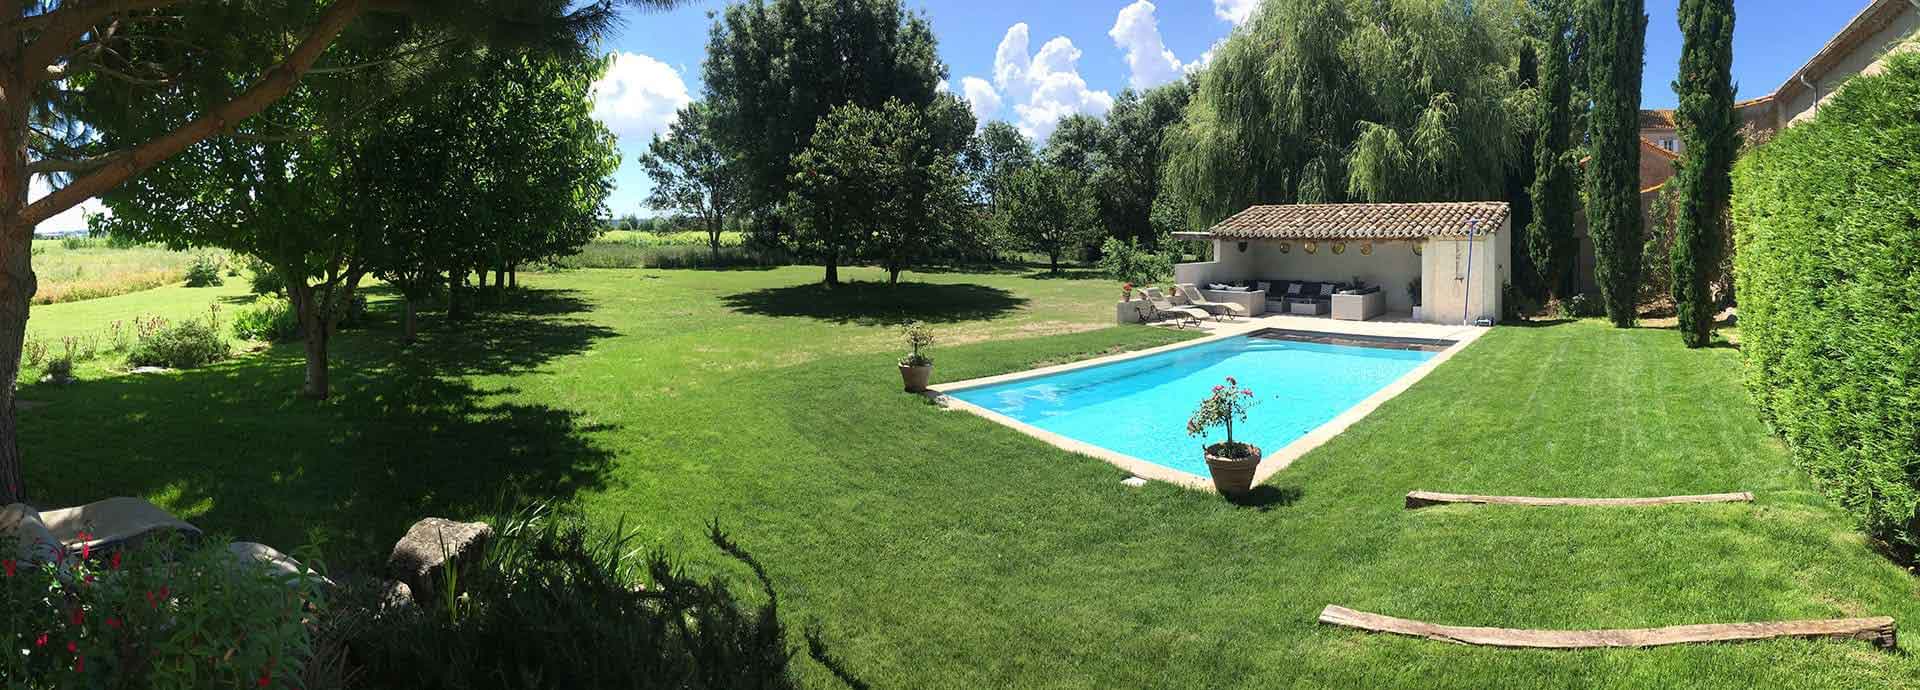 Het zwembad en het park van Domaine de la Vernède